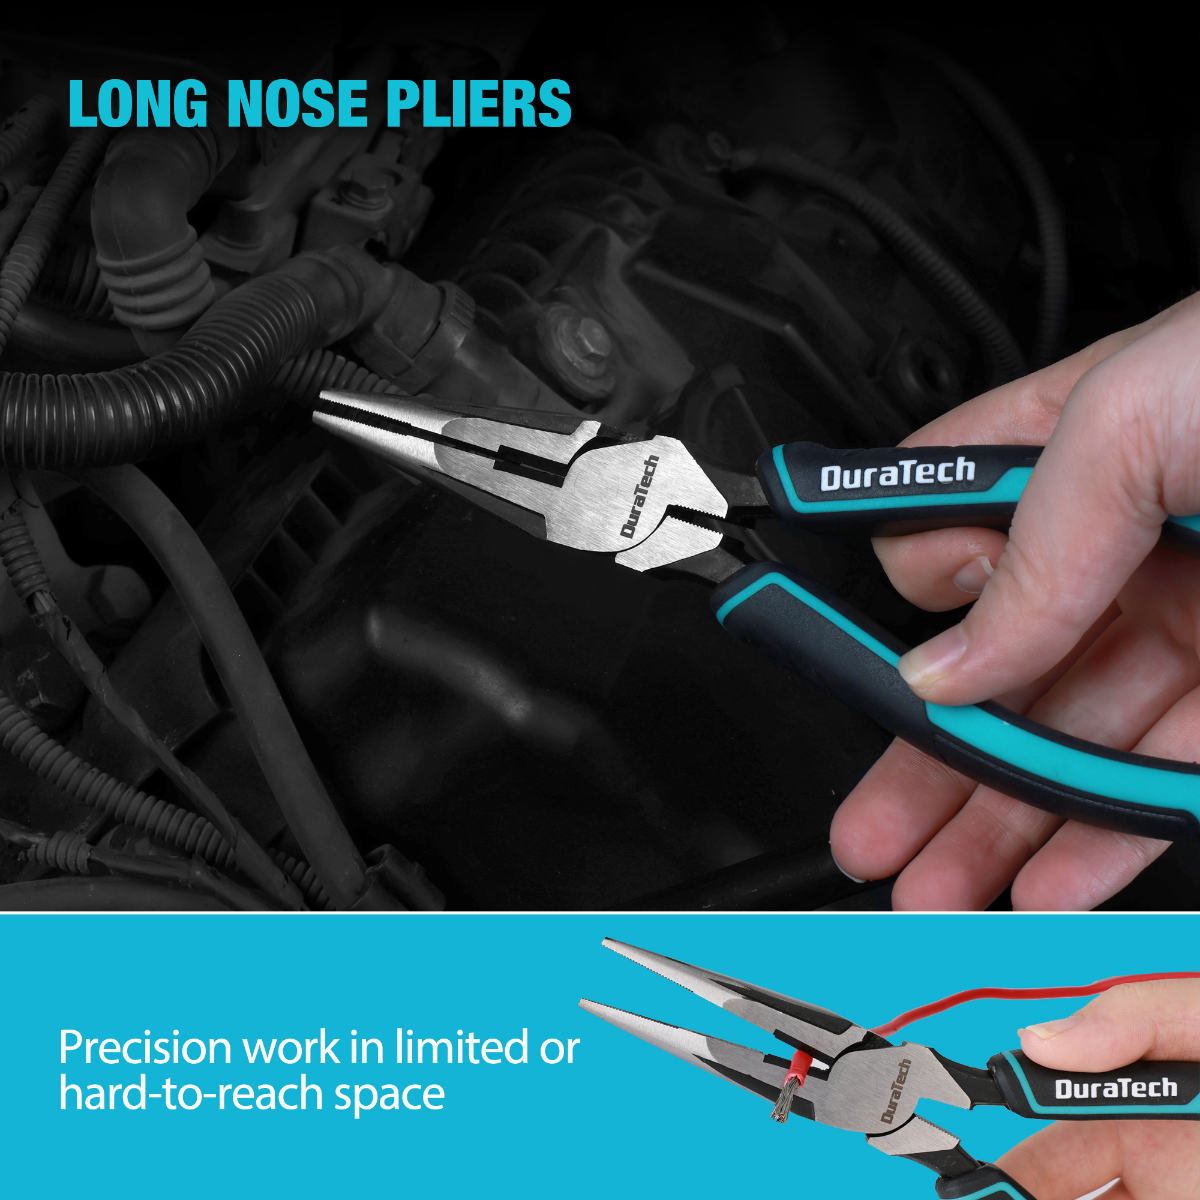 DuraTech 3pcs Plier Set, Premium CR-V Construction, Pliers Tool Set Including 8 Needle Nose Pliers, 8 Linesman Pliers and 7